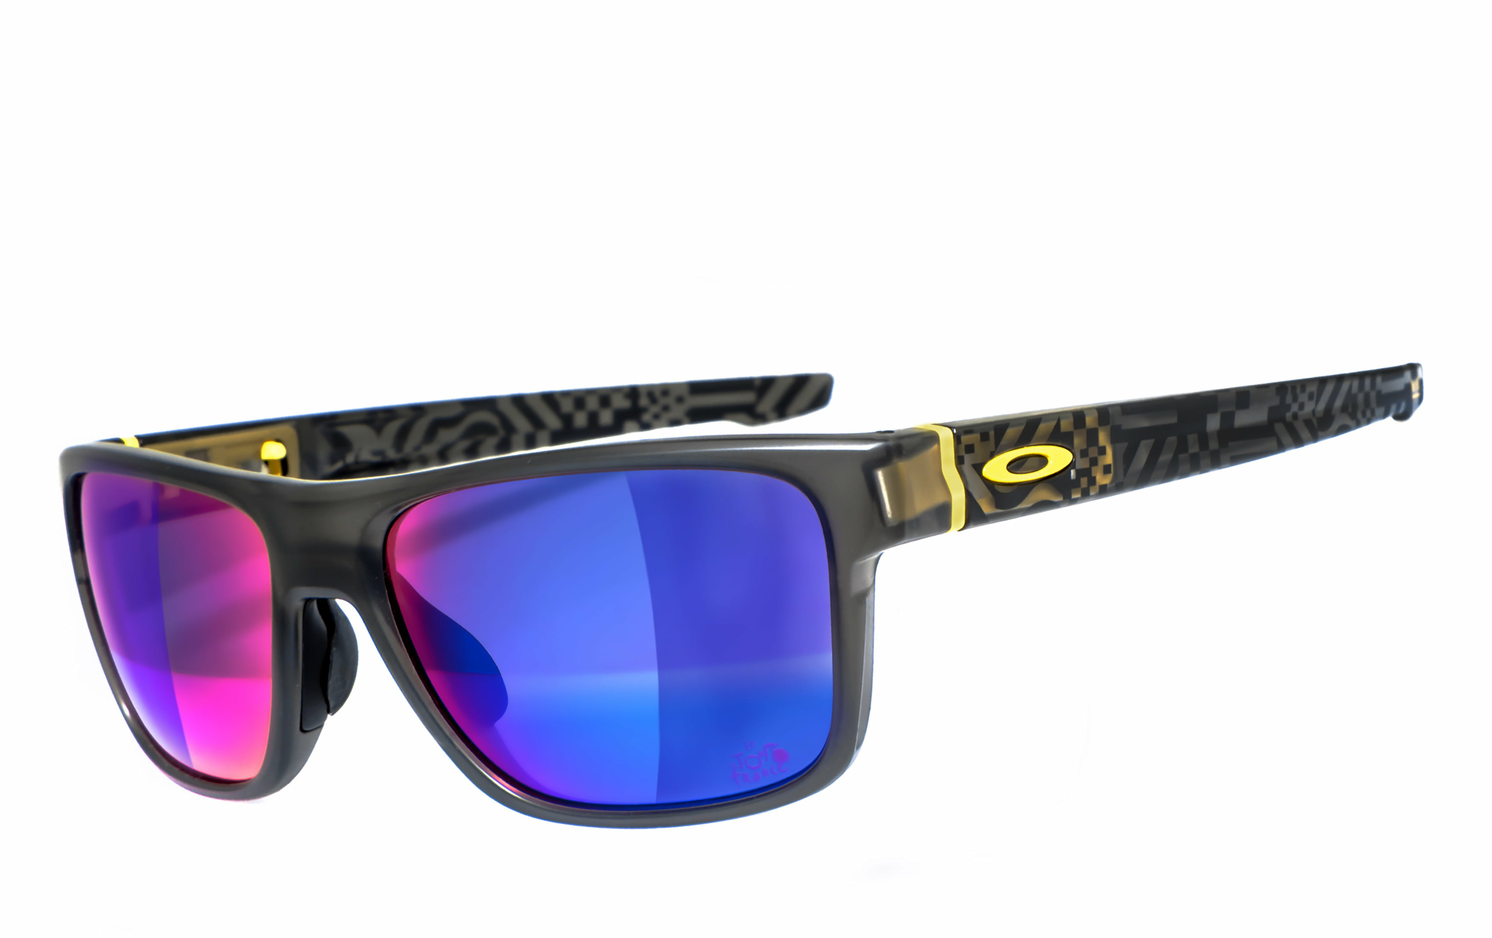 OAKLEY | Crossrange - OO9361  Sportbrille, Fahrradbrille, Sonnenbrille, Bikerbrille, Radbrille, UV400 Schutzfilter